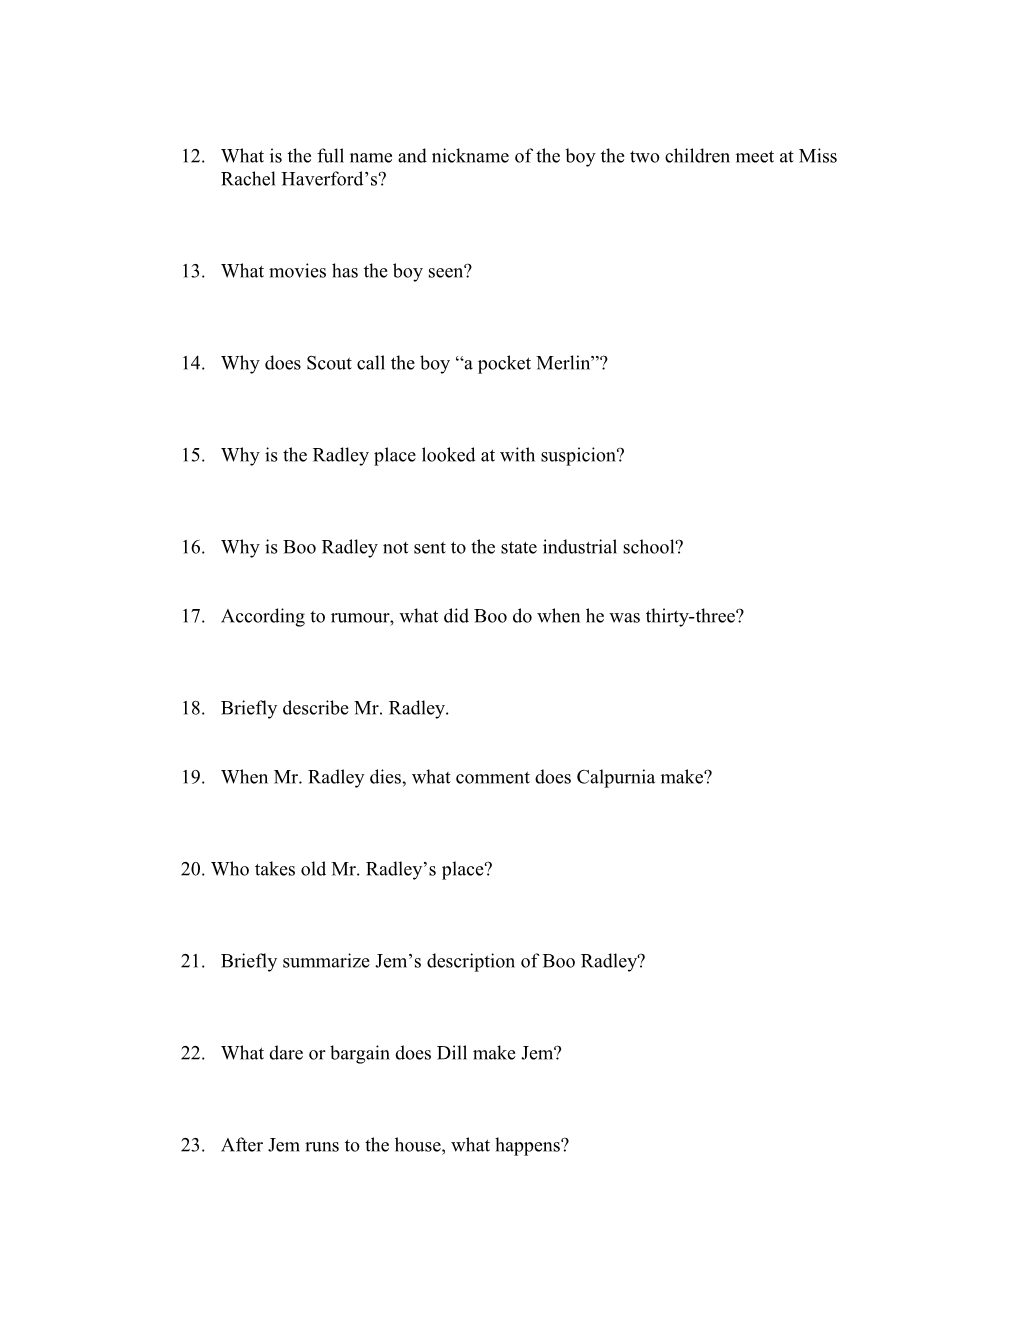 To Kill a Mockingbird- Study Questions